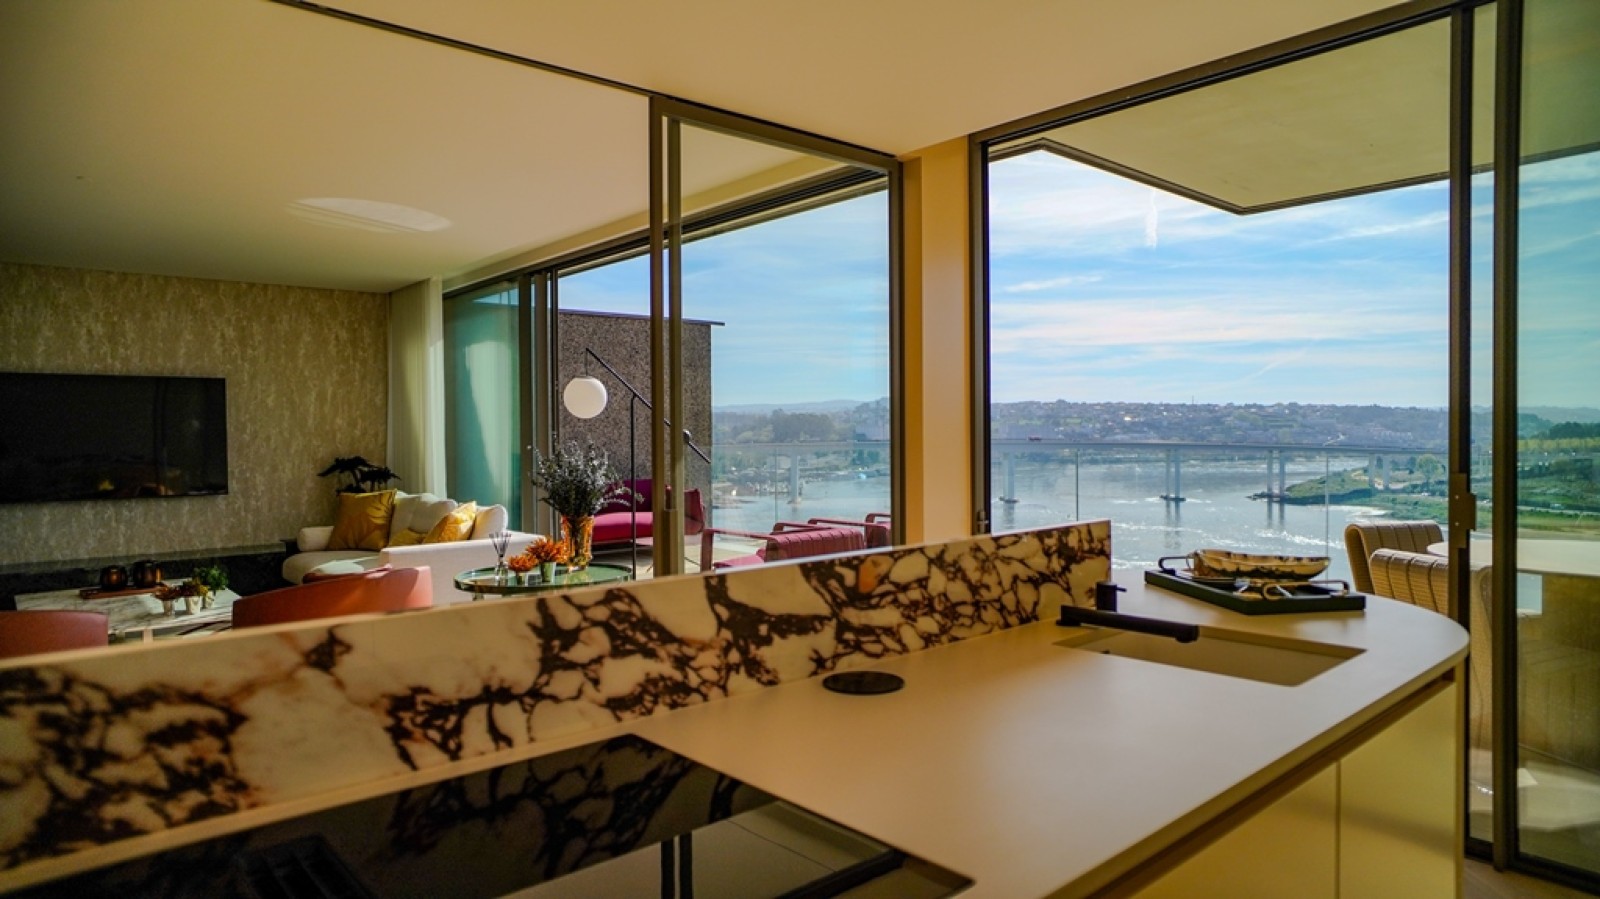 Apartamento T3+1 Duplex com vista de rio, para venda, Porto, Portugal_259559